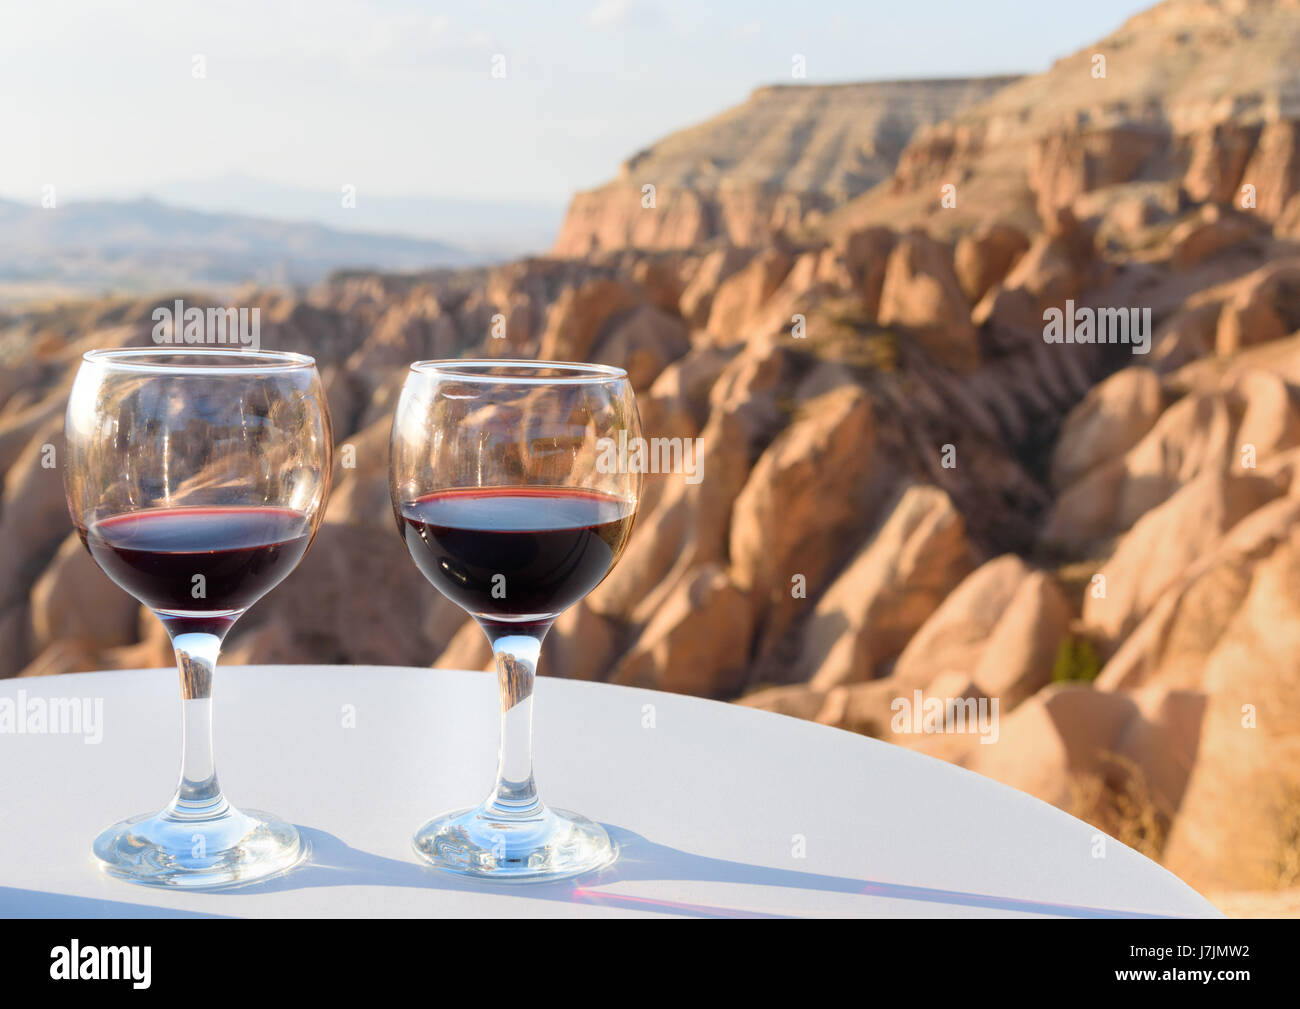 Rotwein-Gläser auf roten Tal Hintergrund in Kappadokien. Nevsehir Provinz.  Turkei Stockfotografie - Alamy